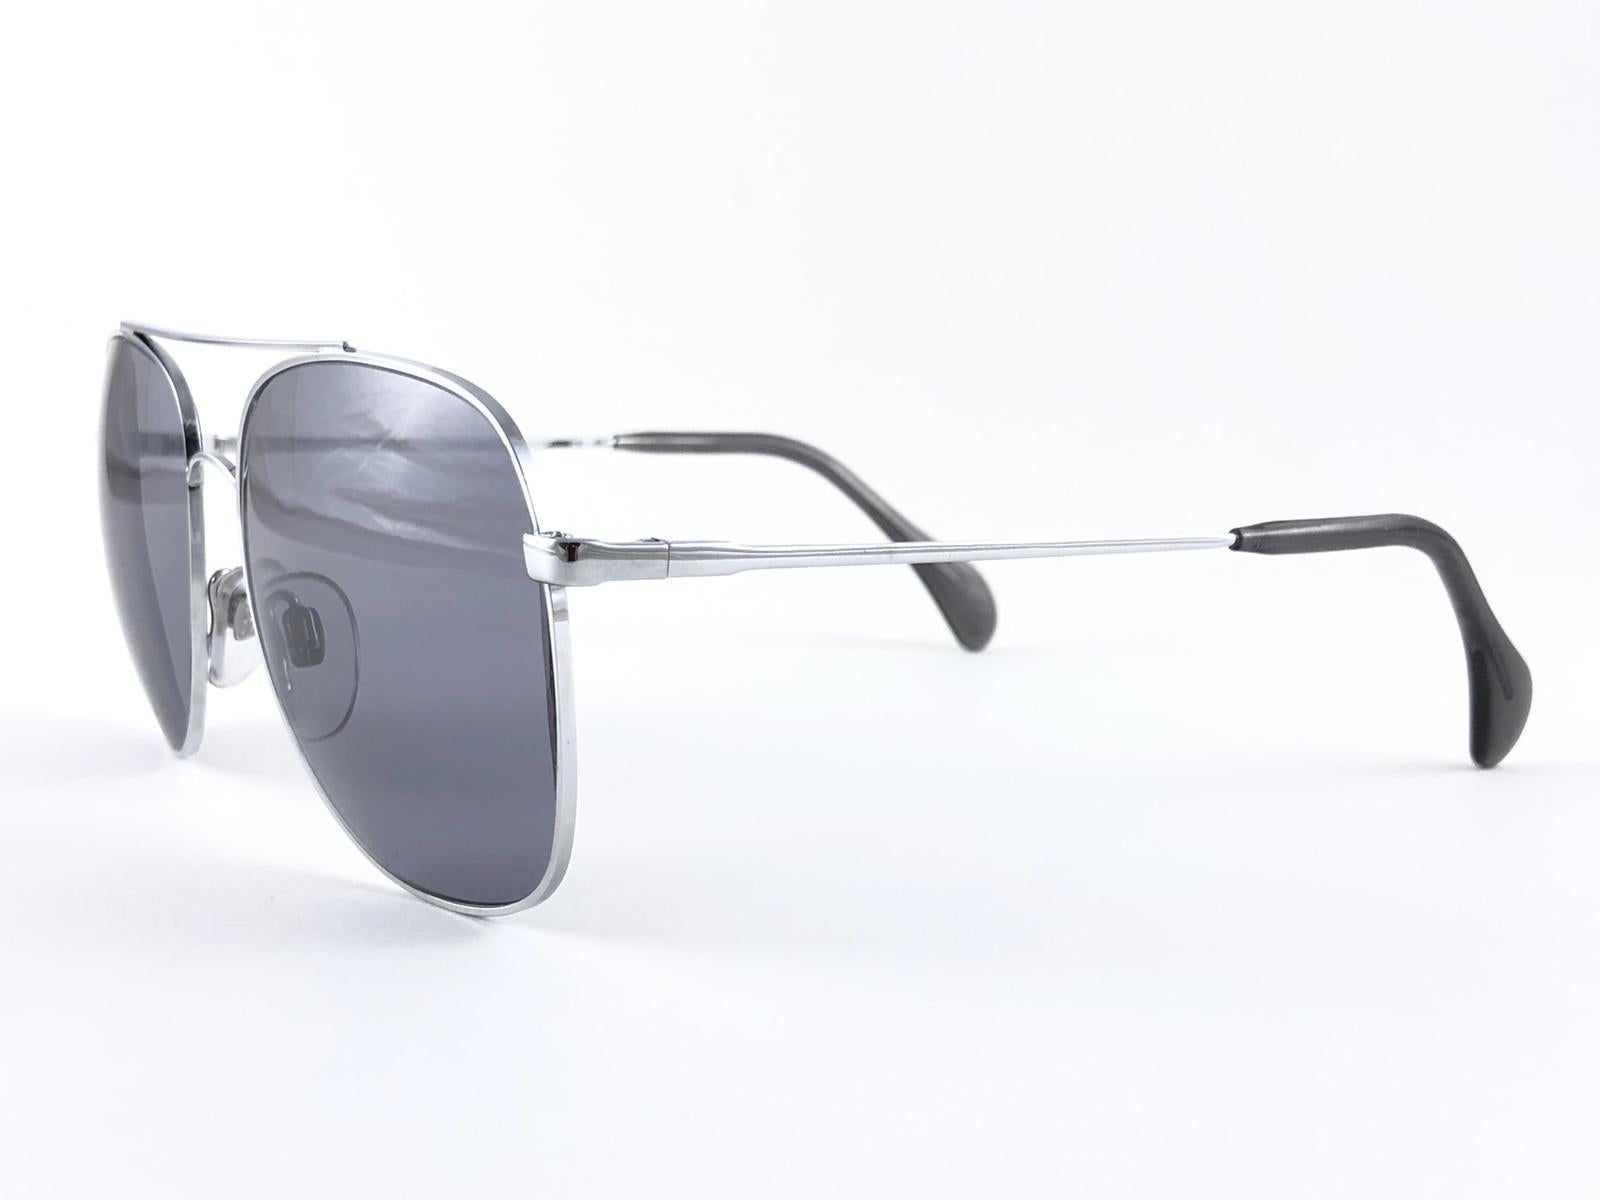 New Vintage Collector Item Menrad Silver Aviator Frame Sunglasses mit einem Paar mittelgrauer Gläser.  

Hergestellt in Deutschland in den 1970er Jahren.



Vorderseite :                    14 cm 

Höhe der Linse :       5.2 cm 

Linsenbreite :     